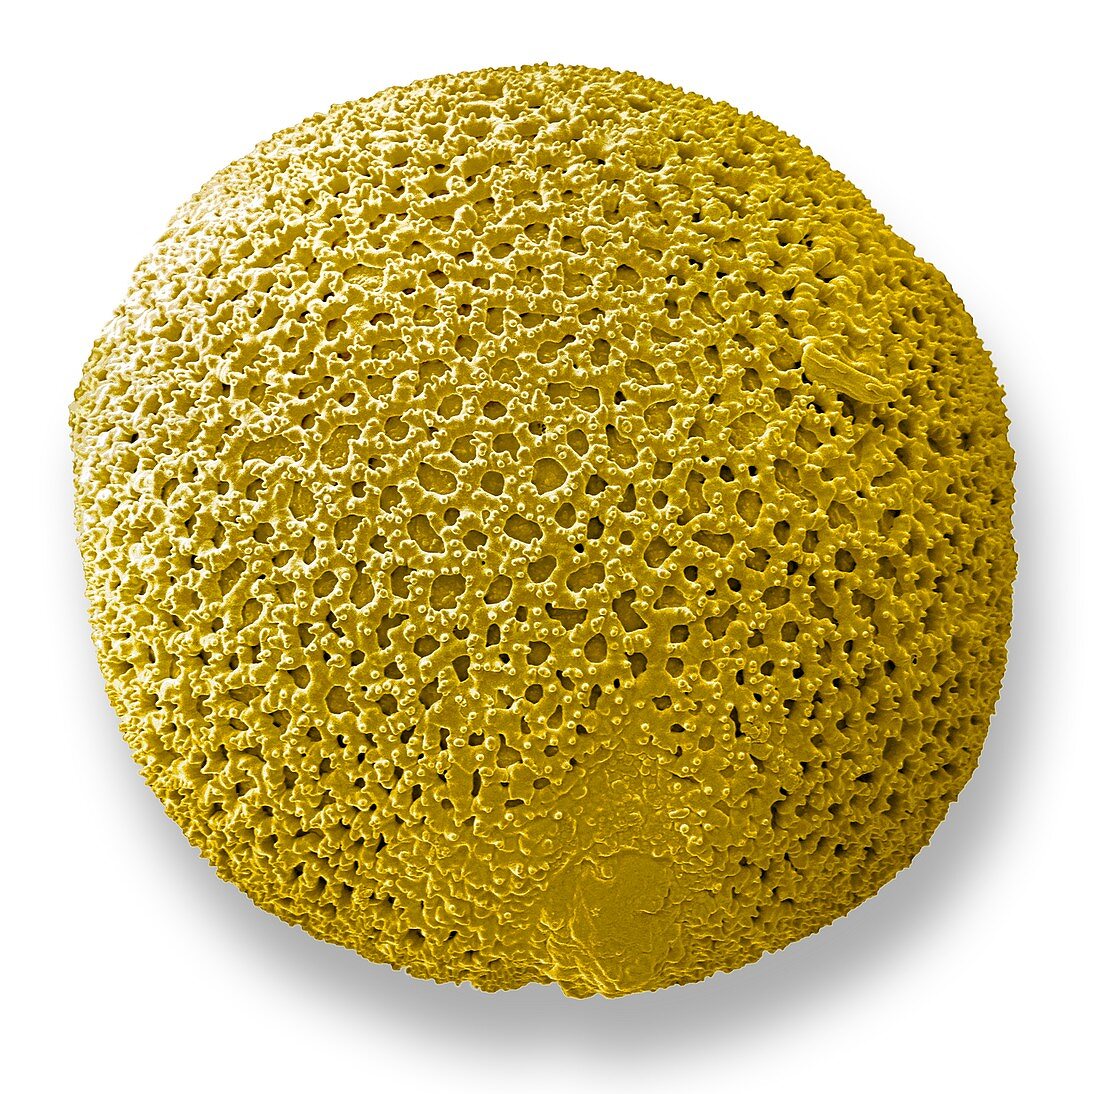 Garryla pollen. SEM